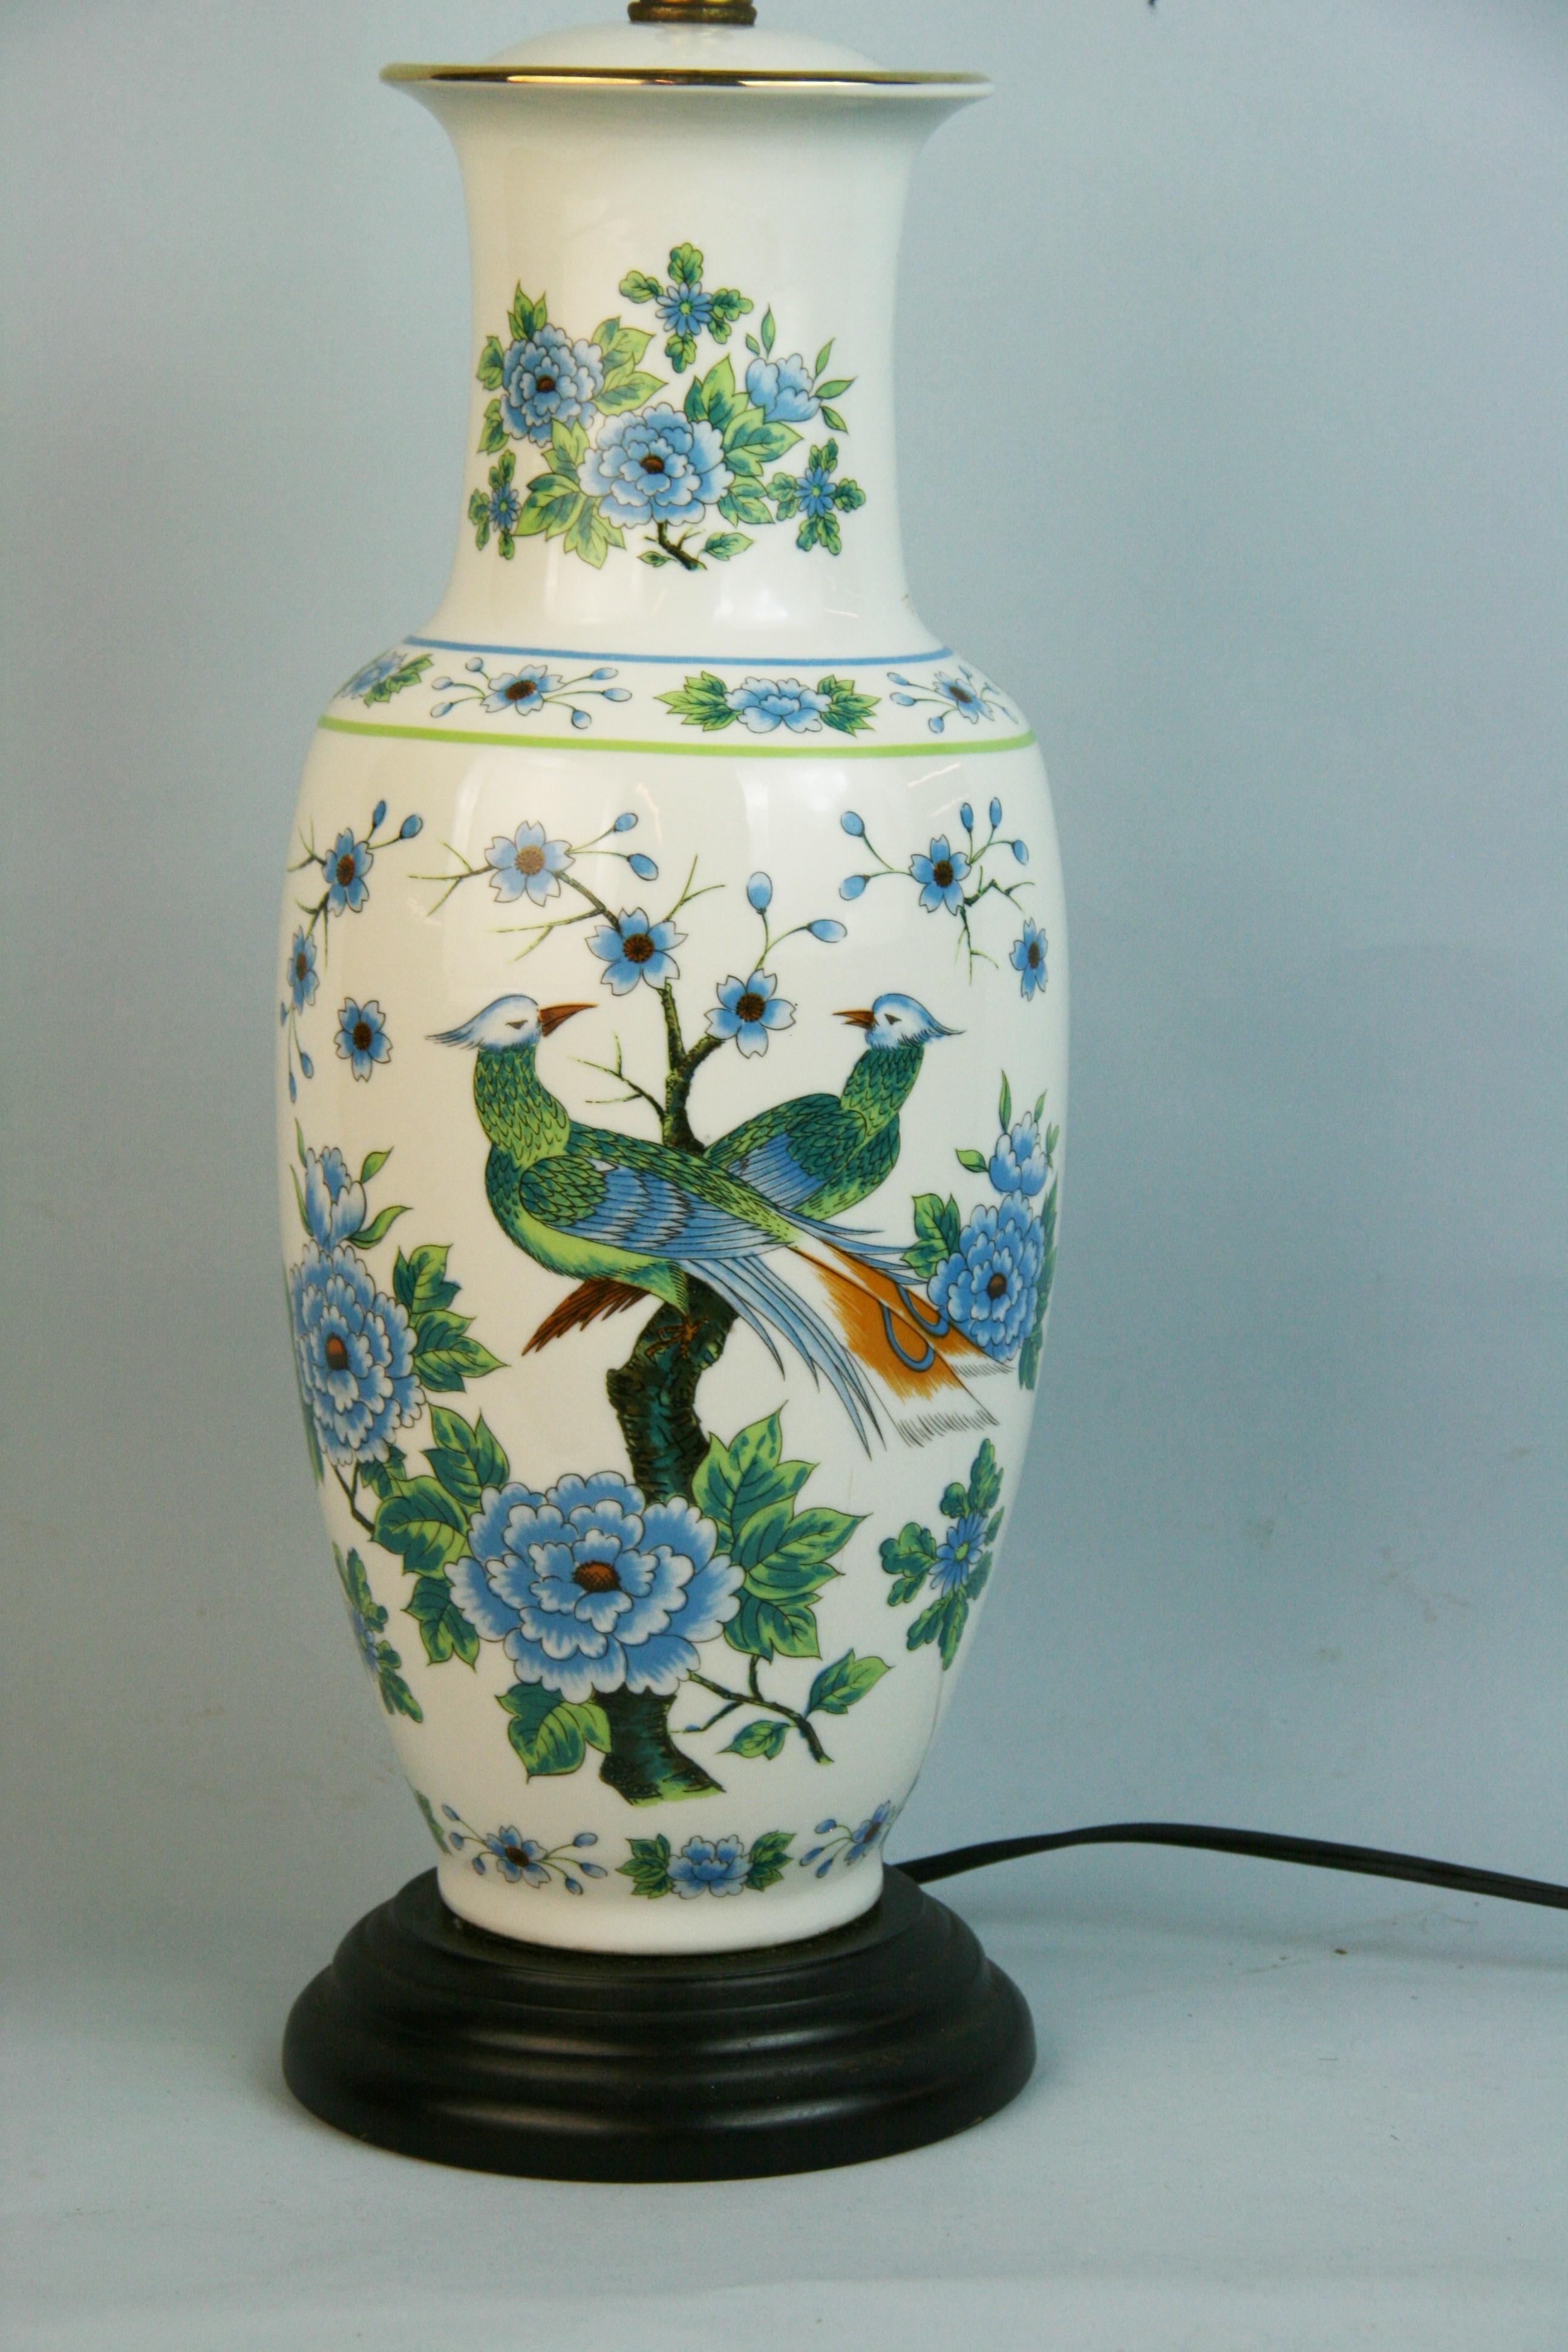 1301 Lampe japonaise peinte à la main avec des oiseaux et des fleurs
Hauteur 21